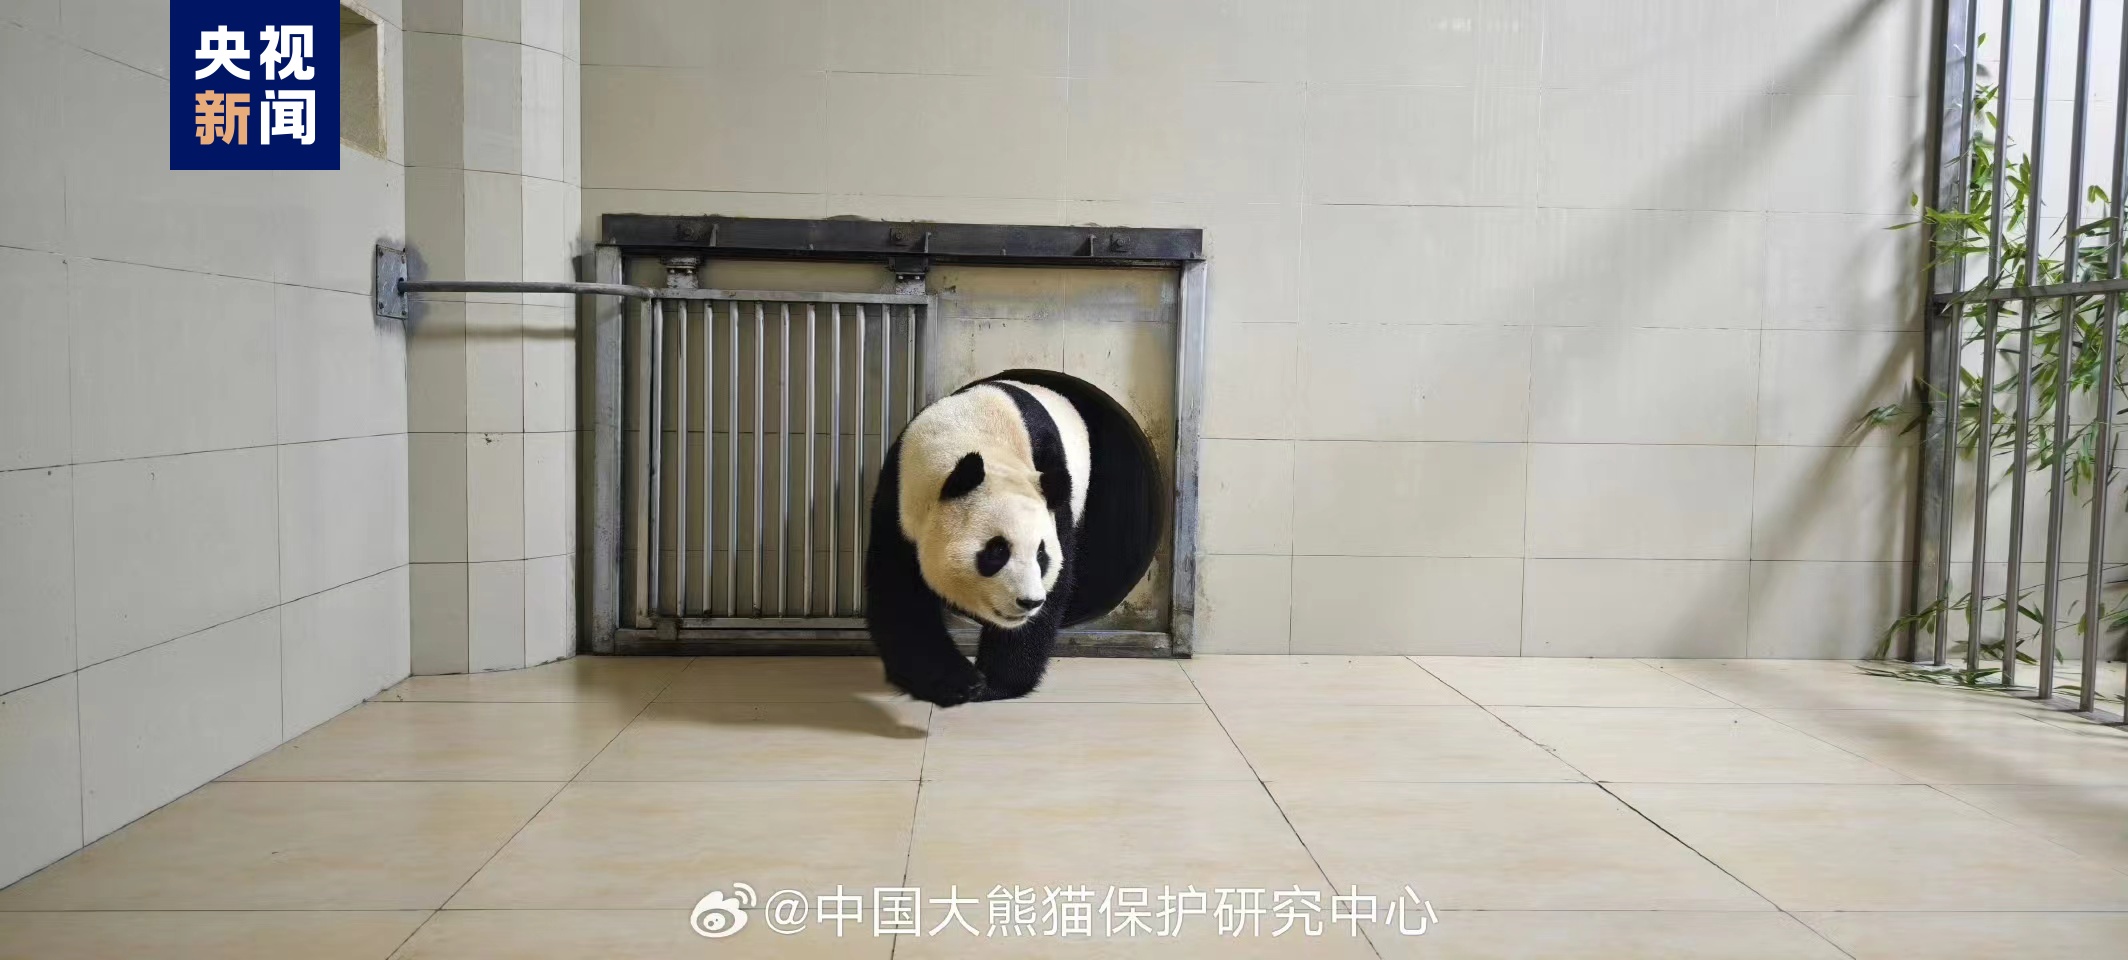 大熊猫“福宝”已胜利抵家 形态优良